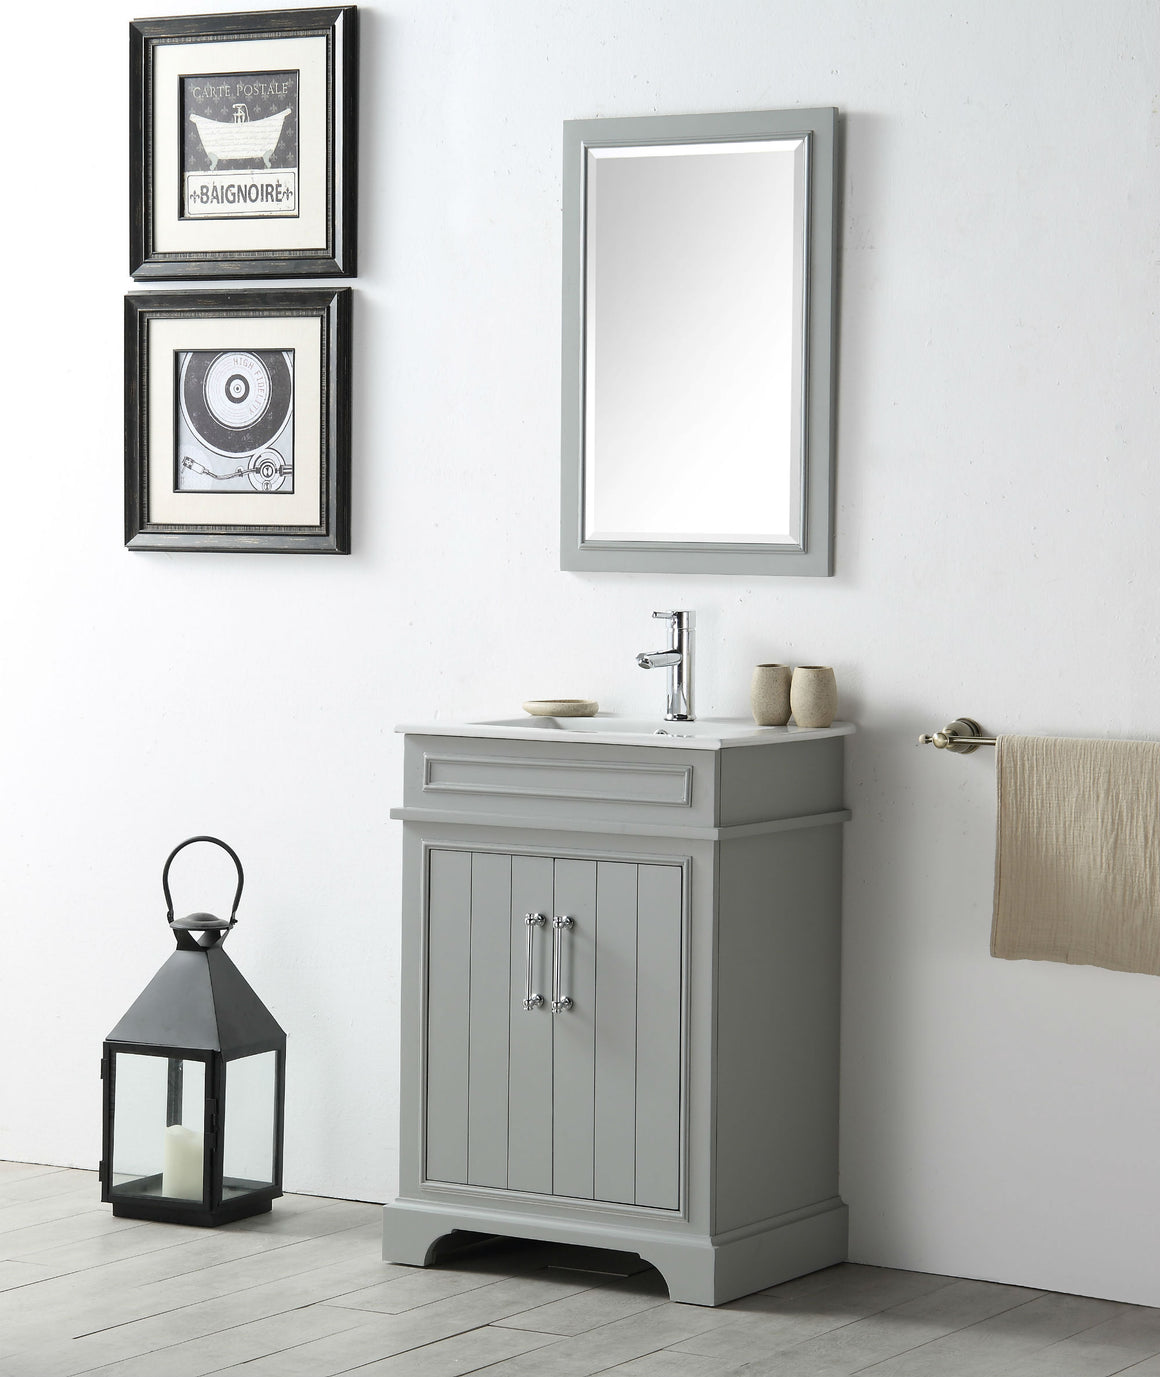 24" Sienna Single Sink Bathroom Vanity in Cool Gray with Ceramic Top